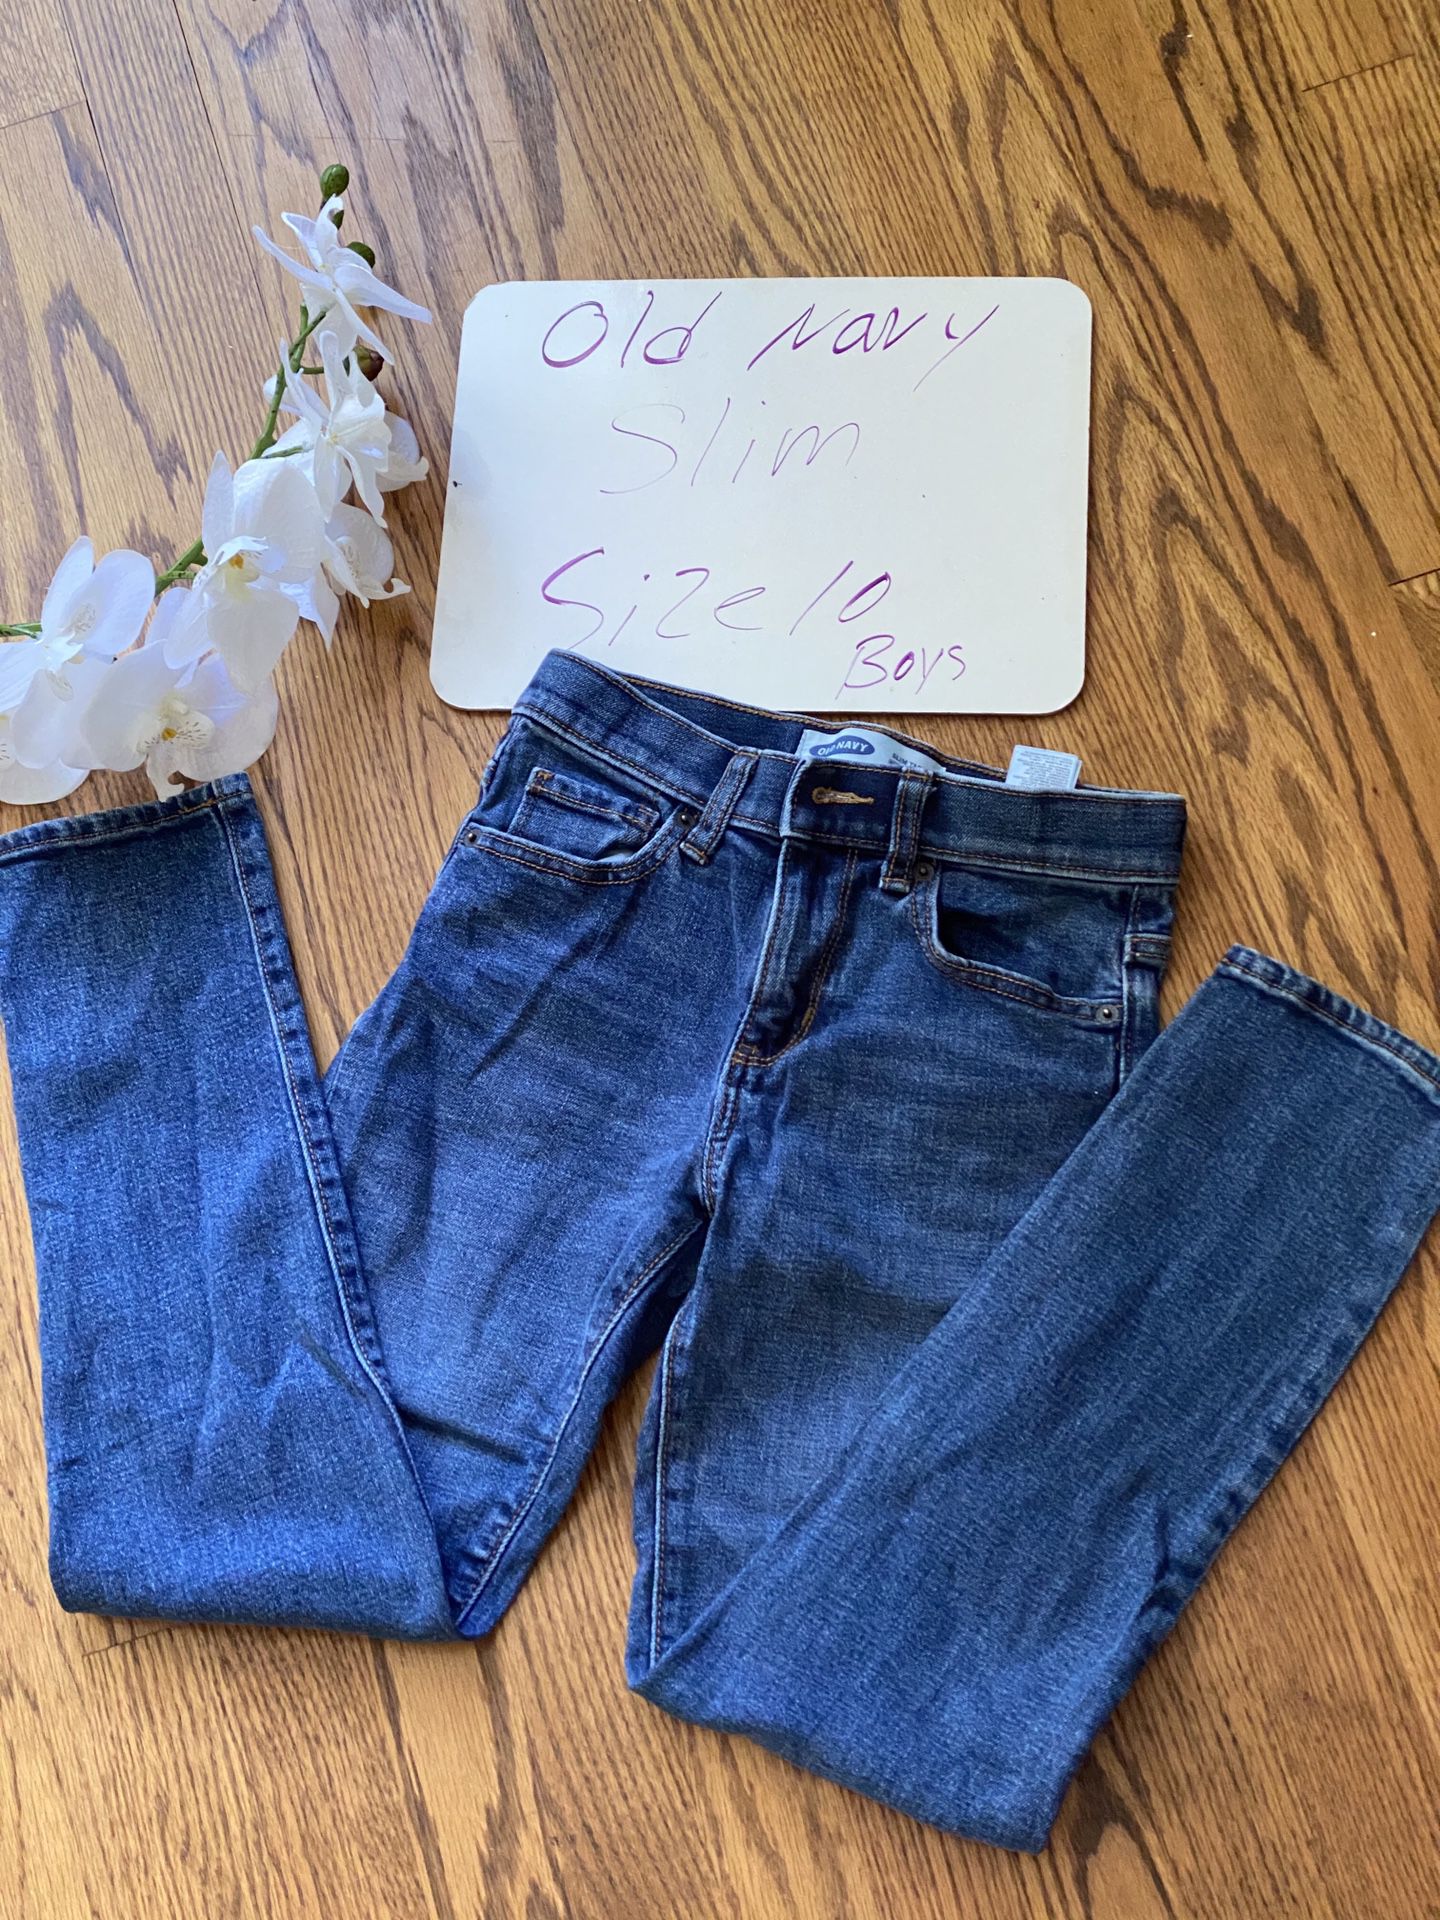 Old Navy jeans size 10 boys